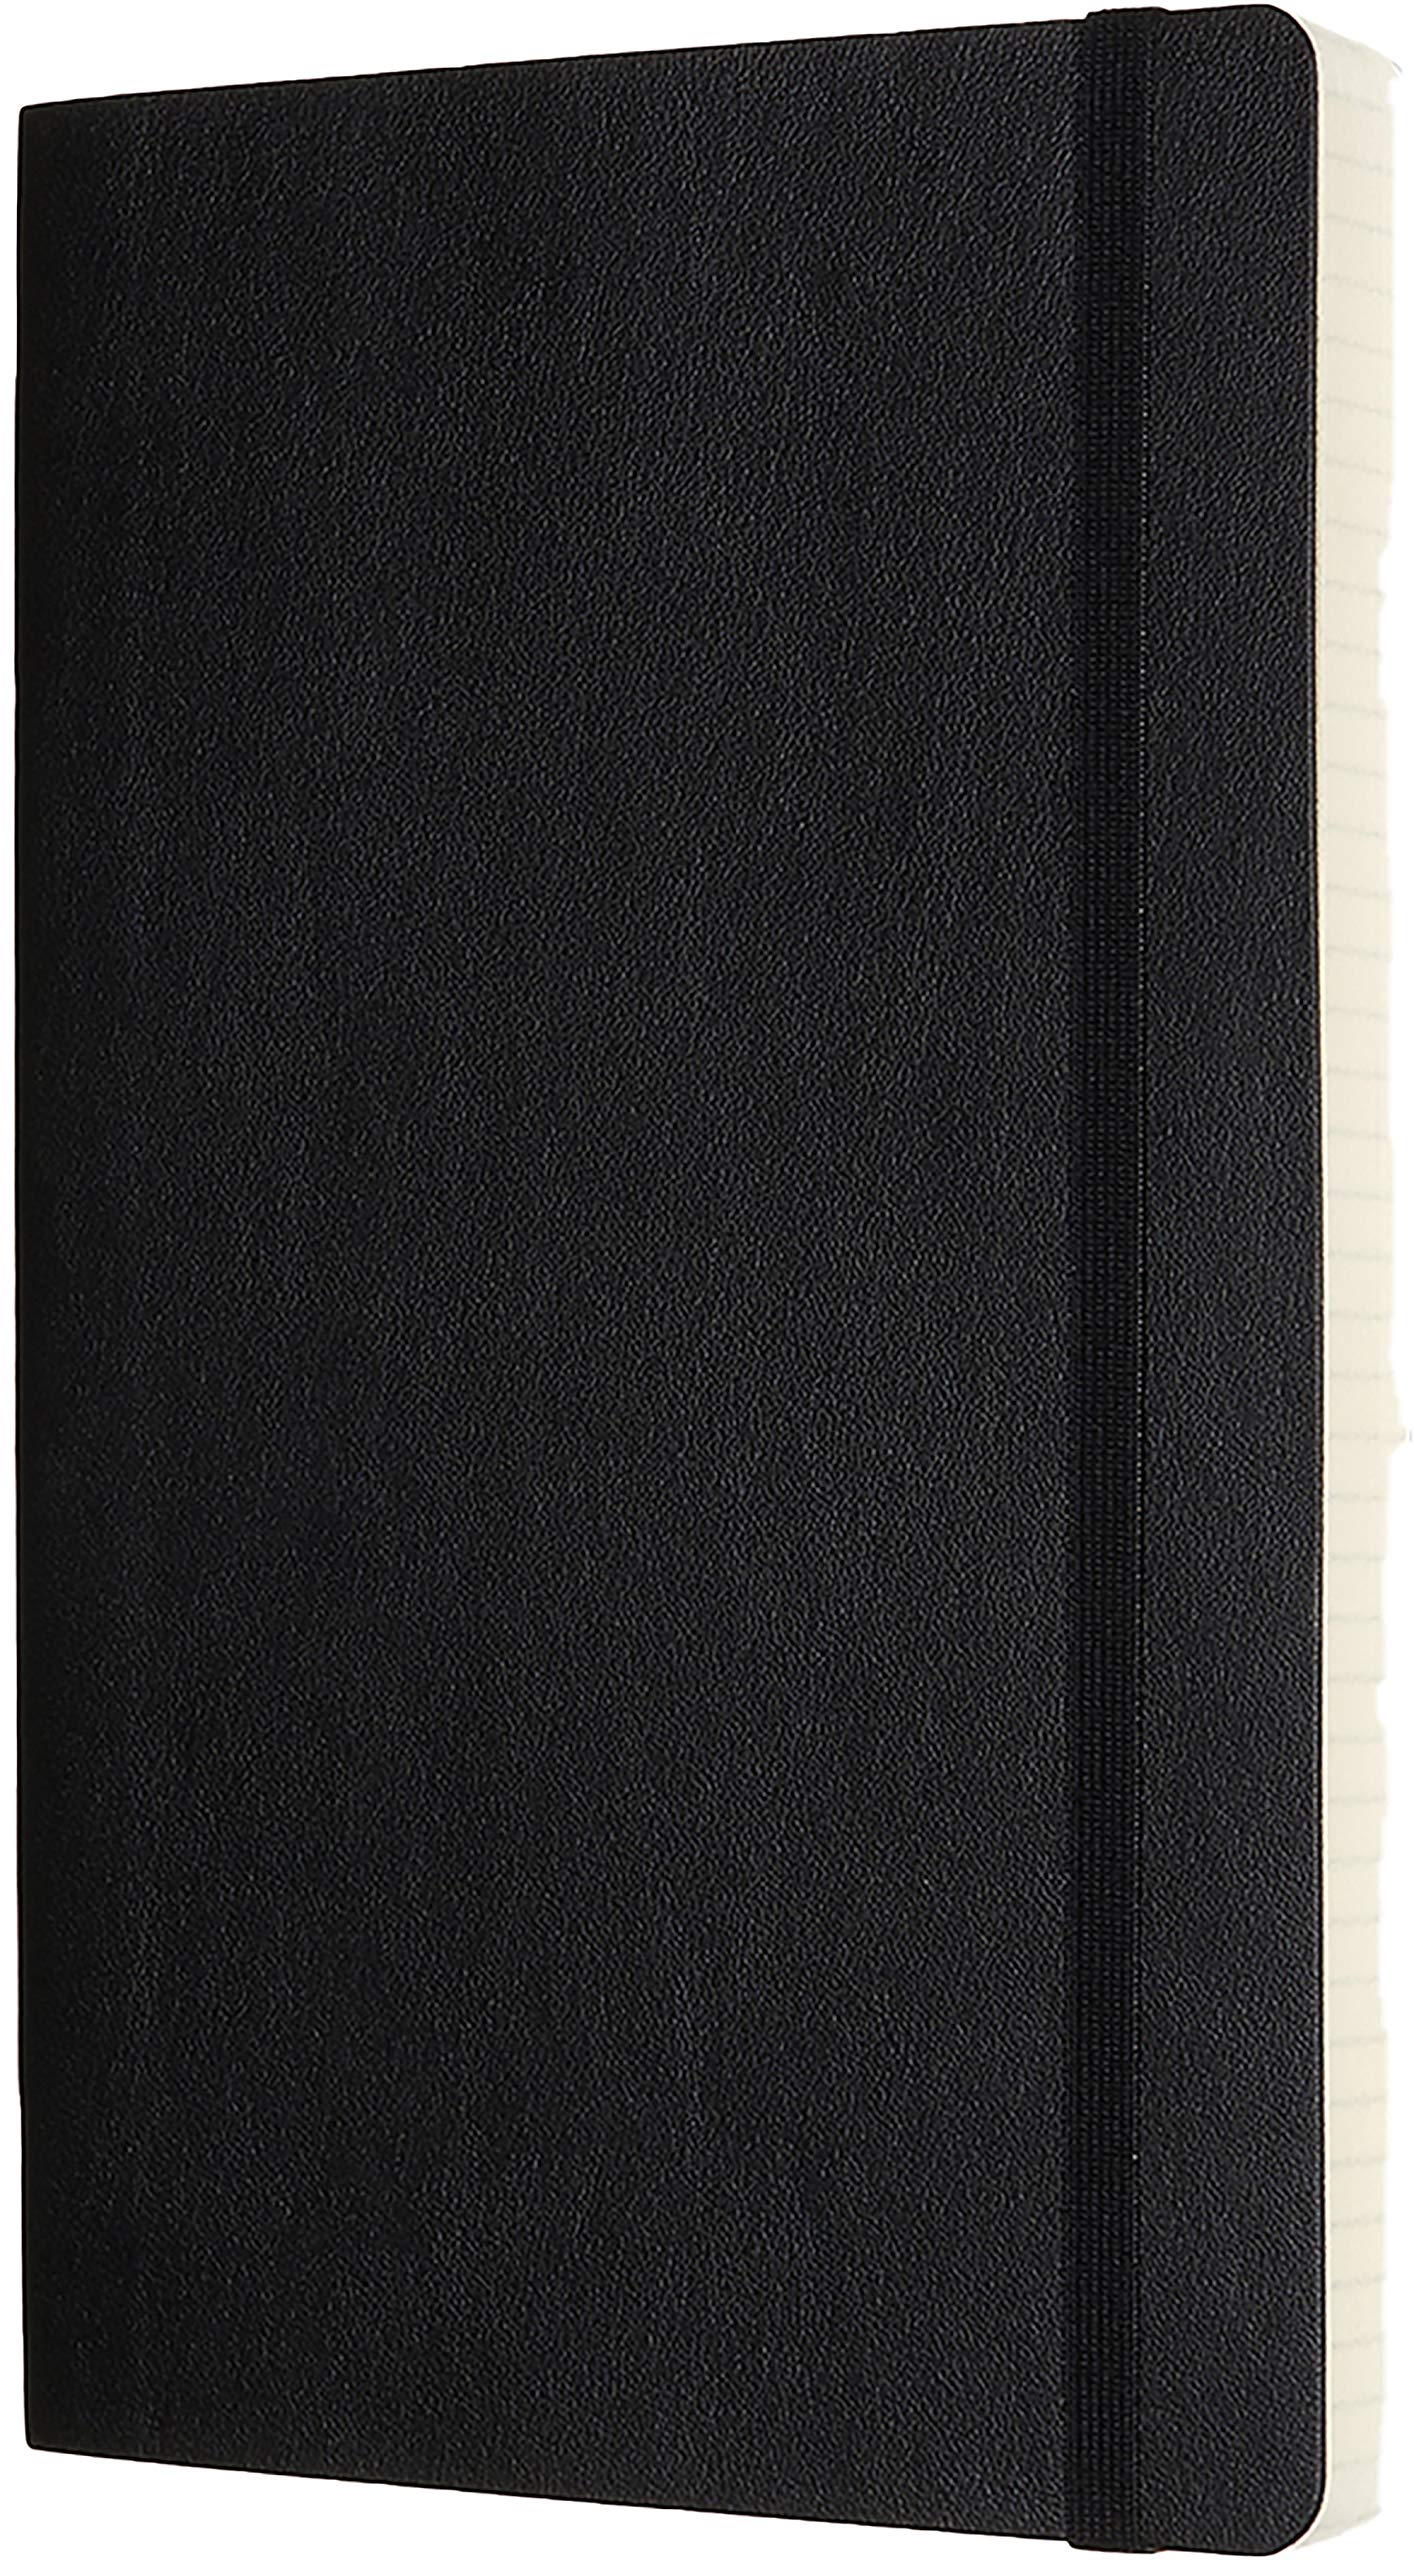 Carnet - Moleskine Notebook, Expanded Large, Squared, Black, Soft Cover | Moleskine